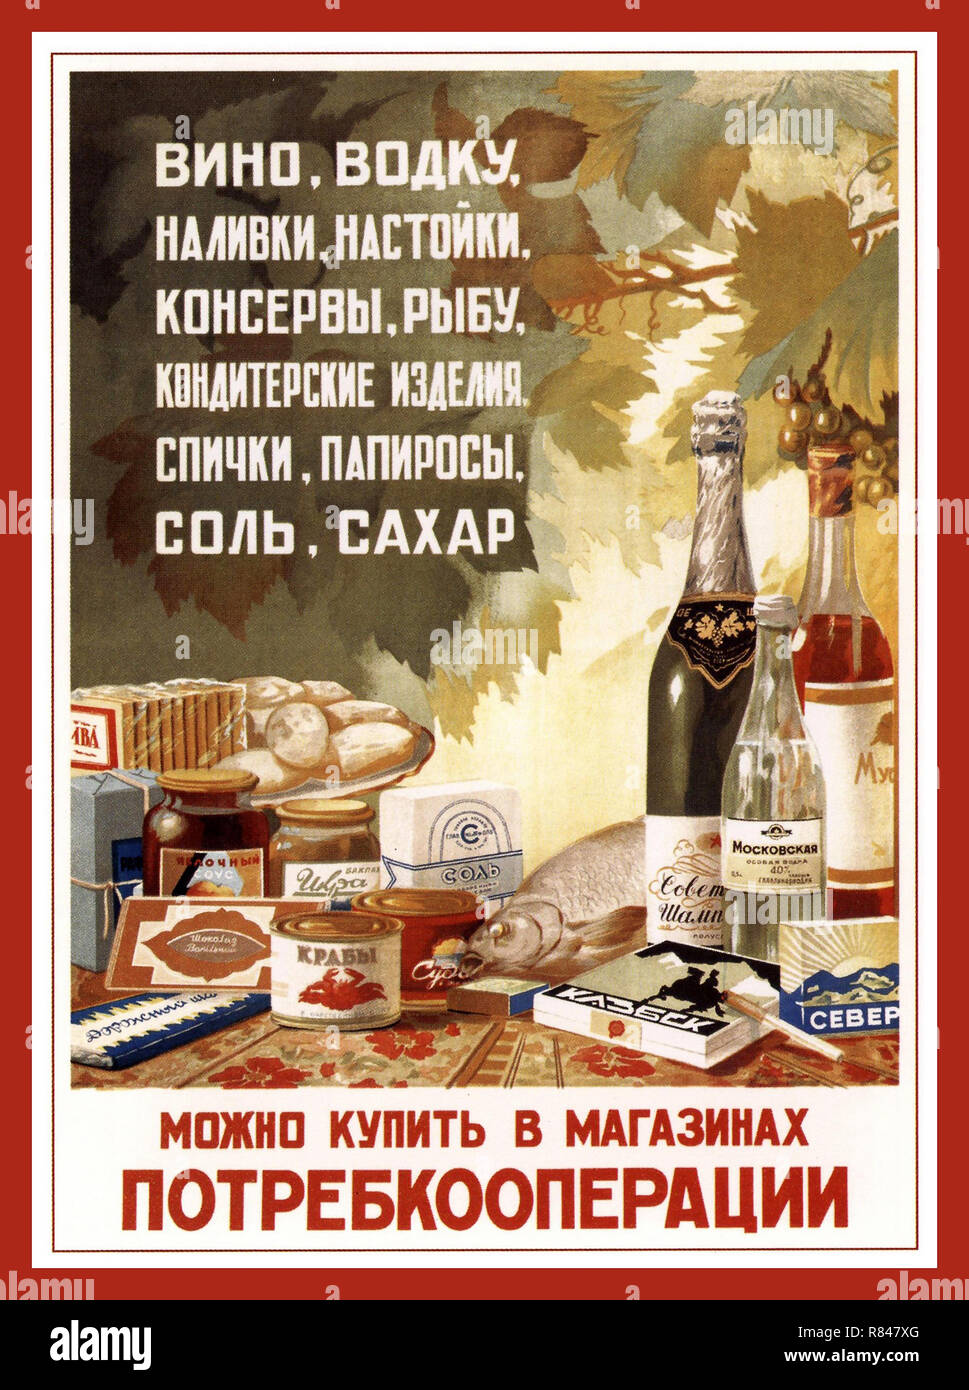 Années 1950 Vintage russe soviétique produisent des aliments et des boissons 1954 Publicité Vin, vodka, cigarettes et autres liqueurs produits que vous pouvez acheter dans les magasins de la Russie soviétique URSS coopération Porte Banque D'Images